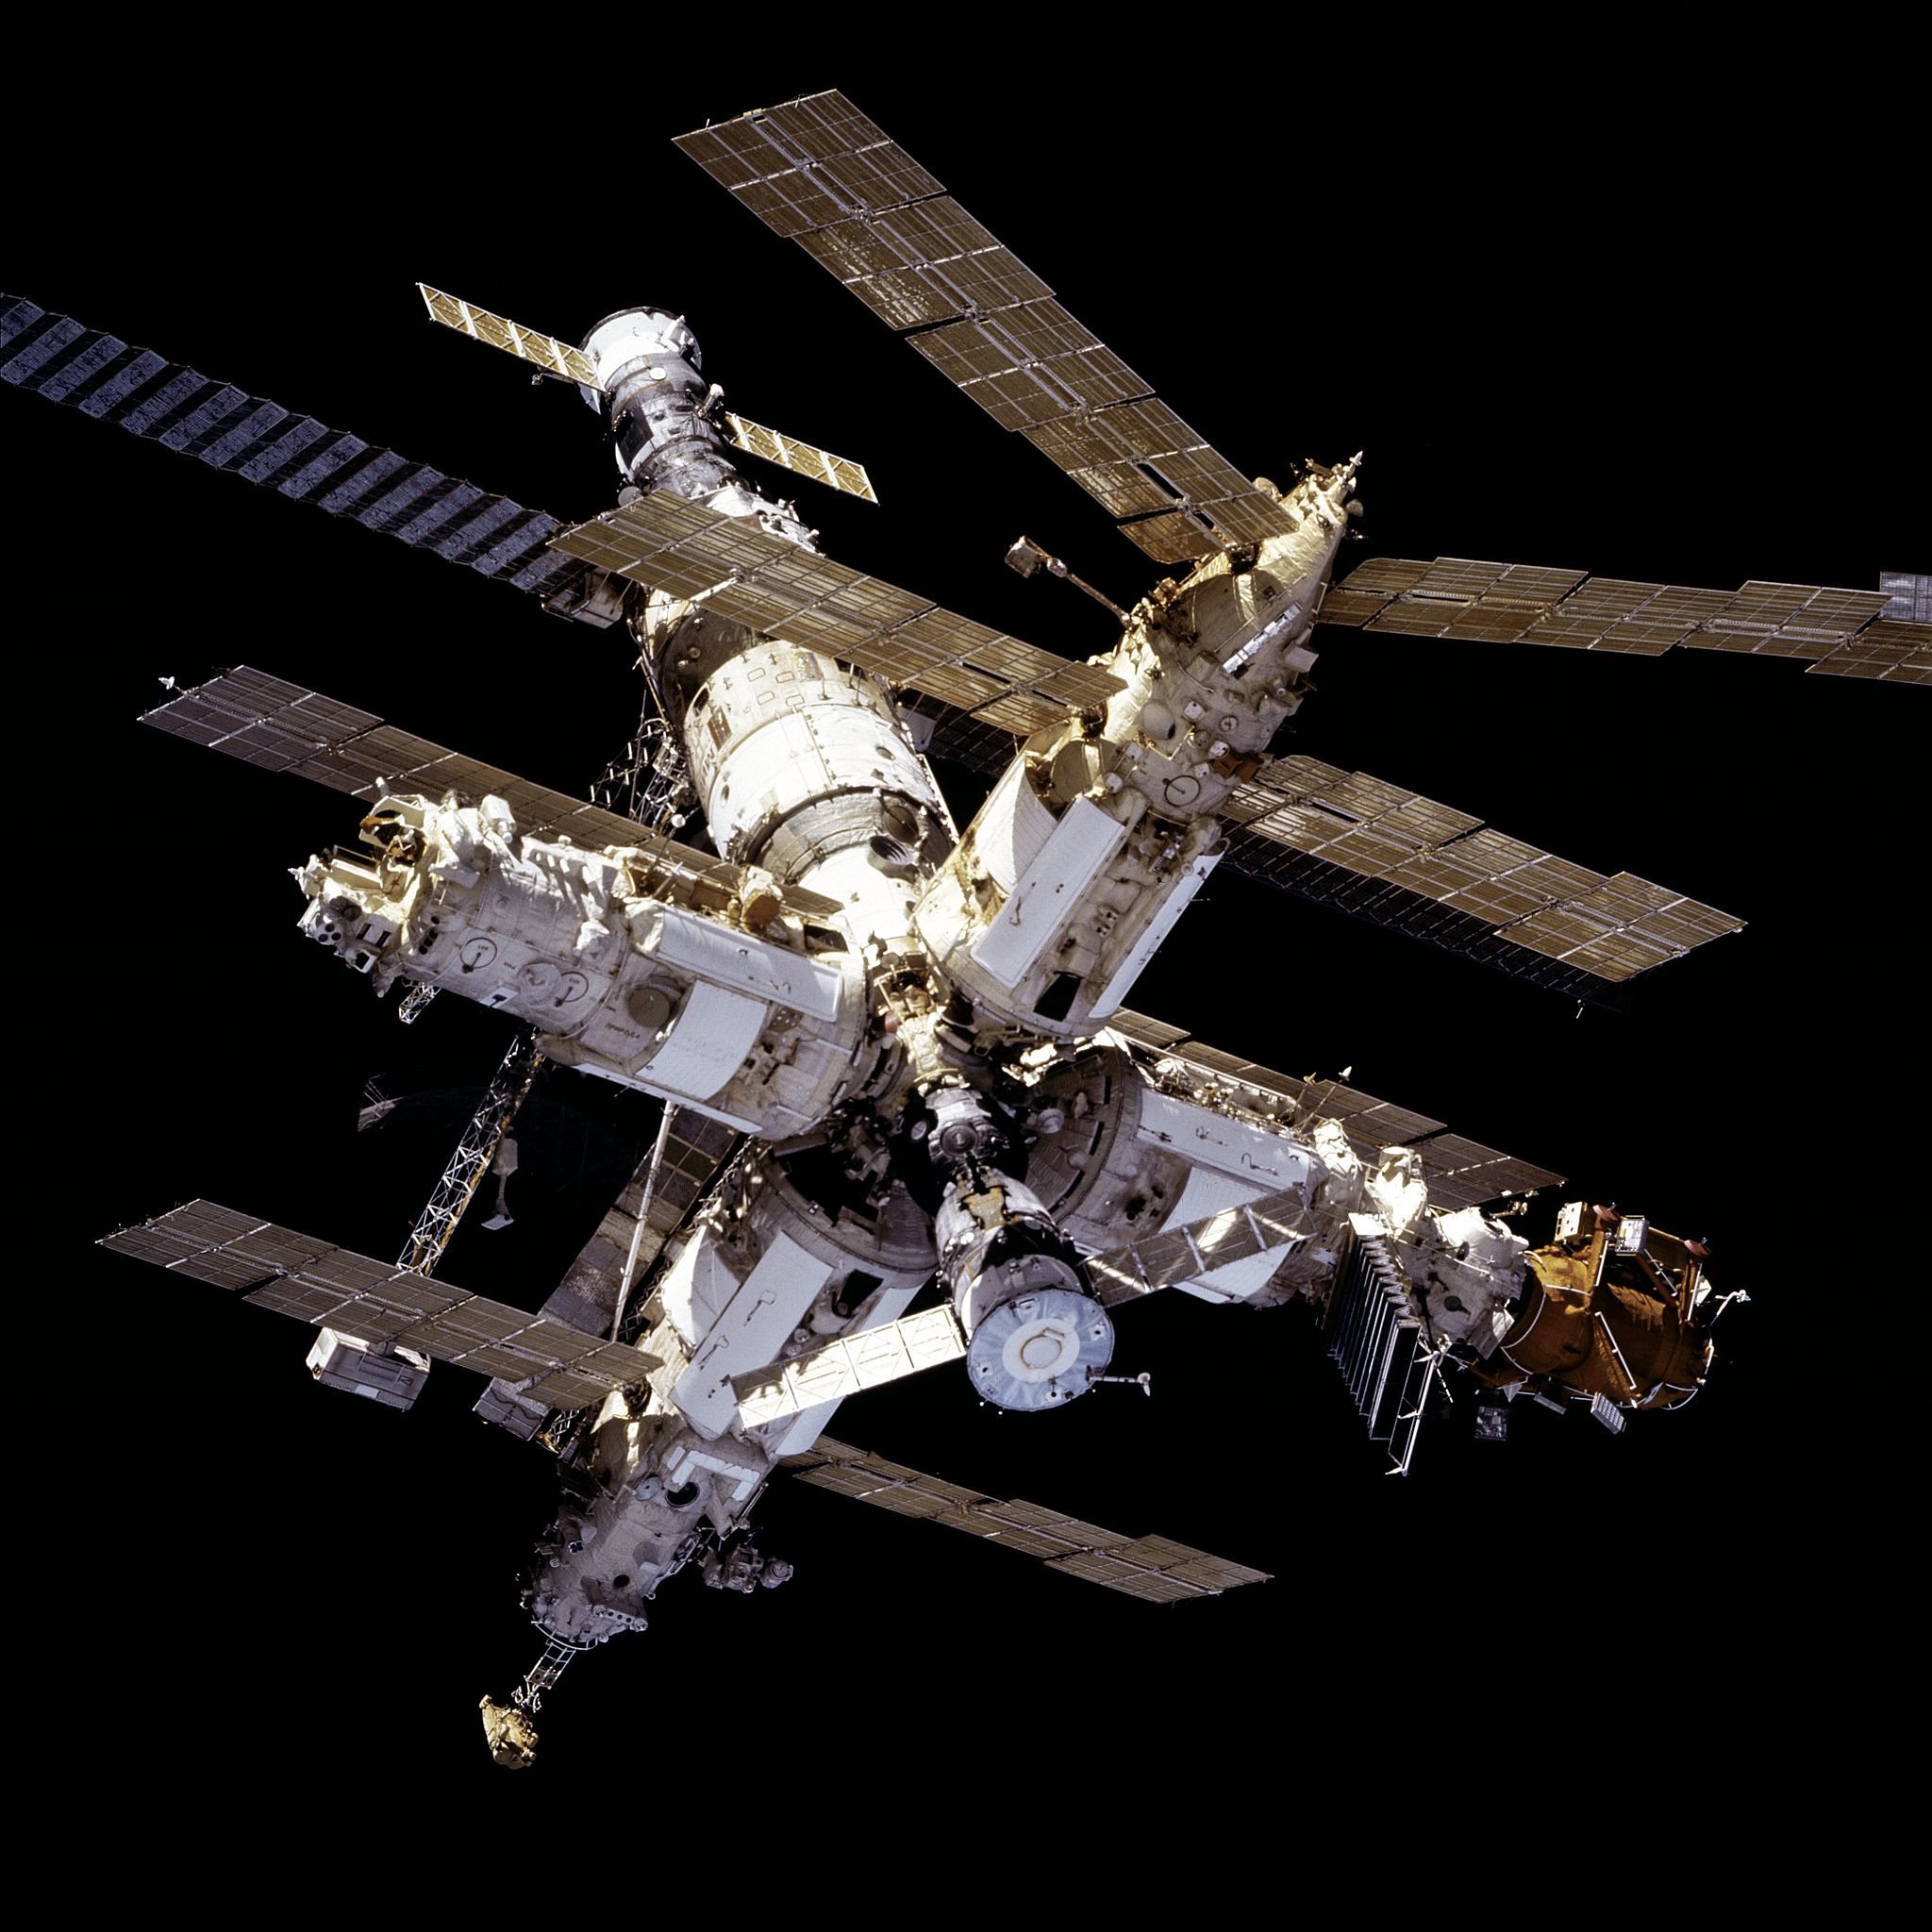 和平号空间站联盟图片